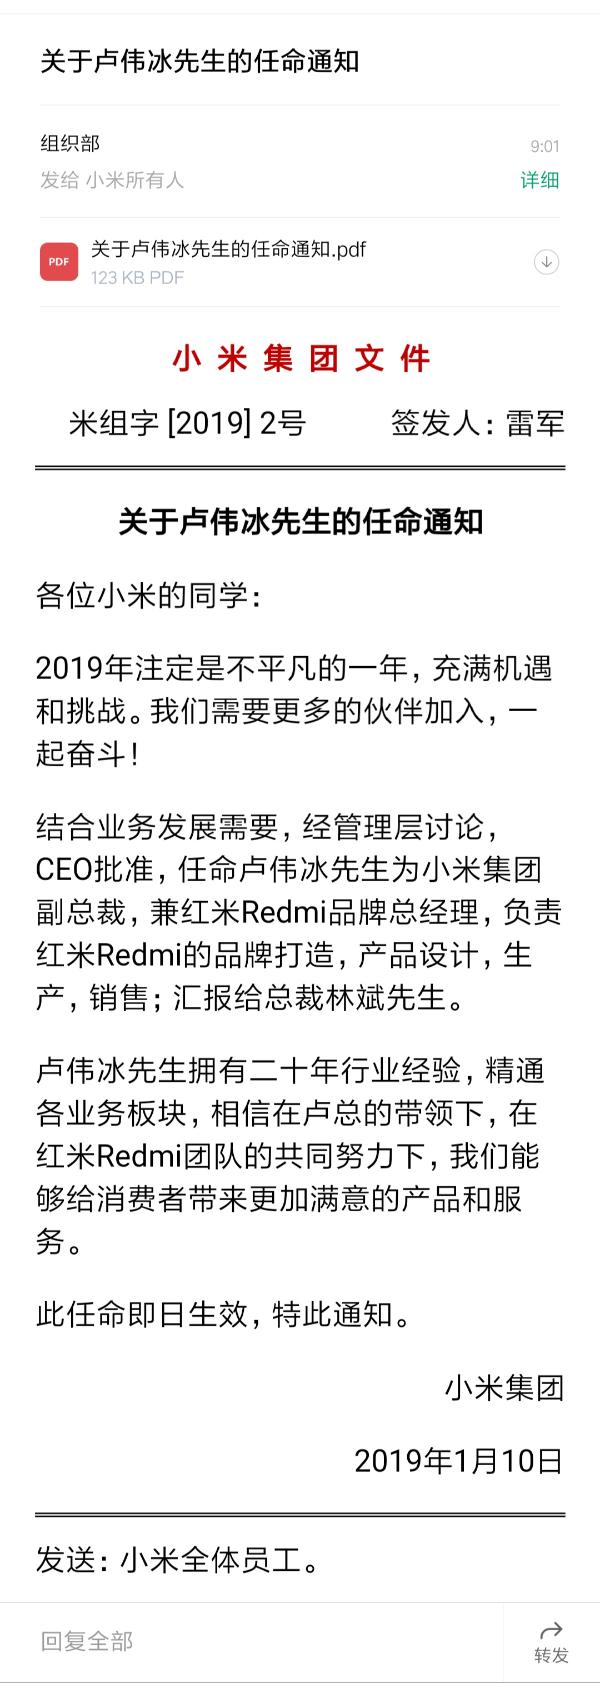 卢伟冰正式执掌红米Redmi品牌 今日发布红米Note 7